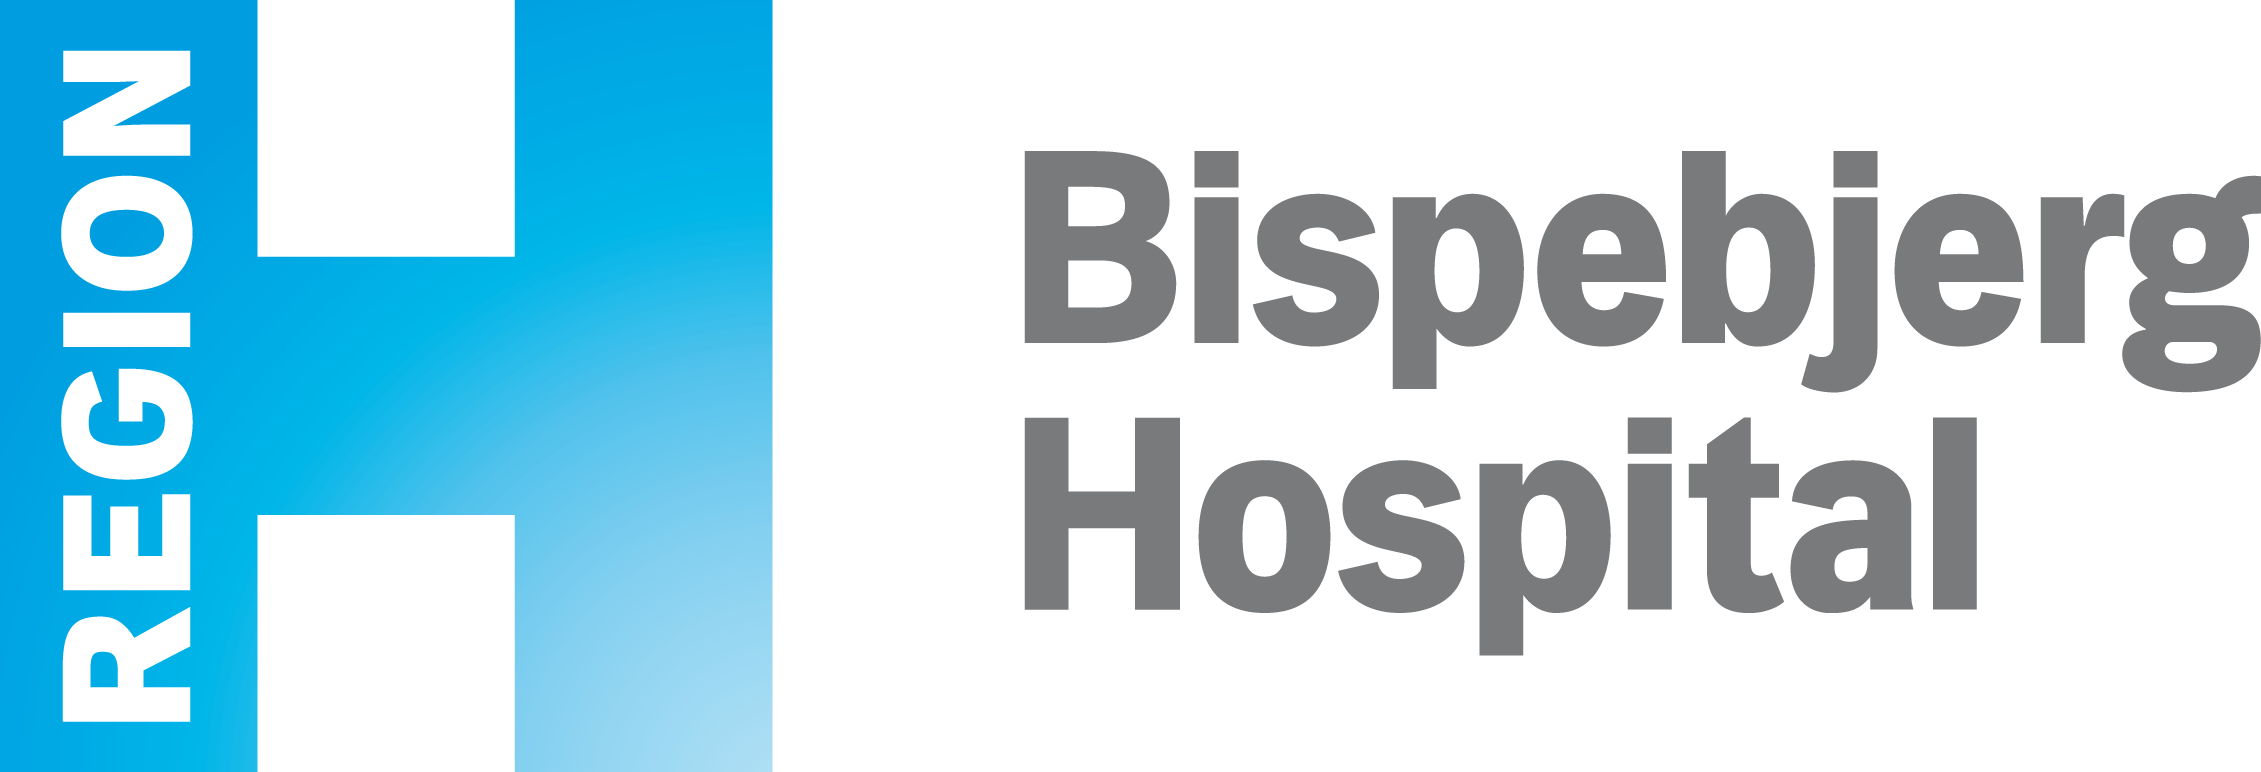 Bisperbjerg Hospital